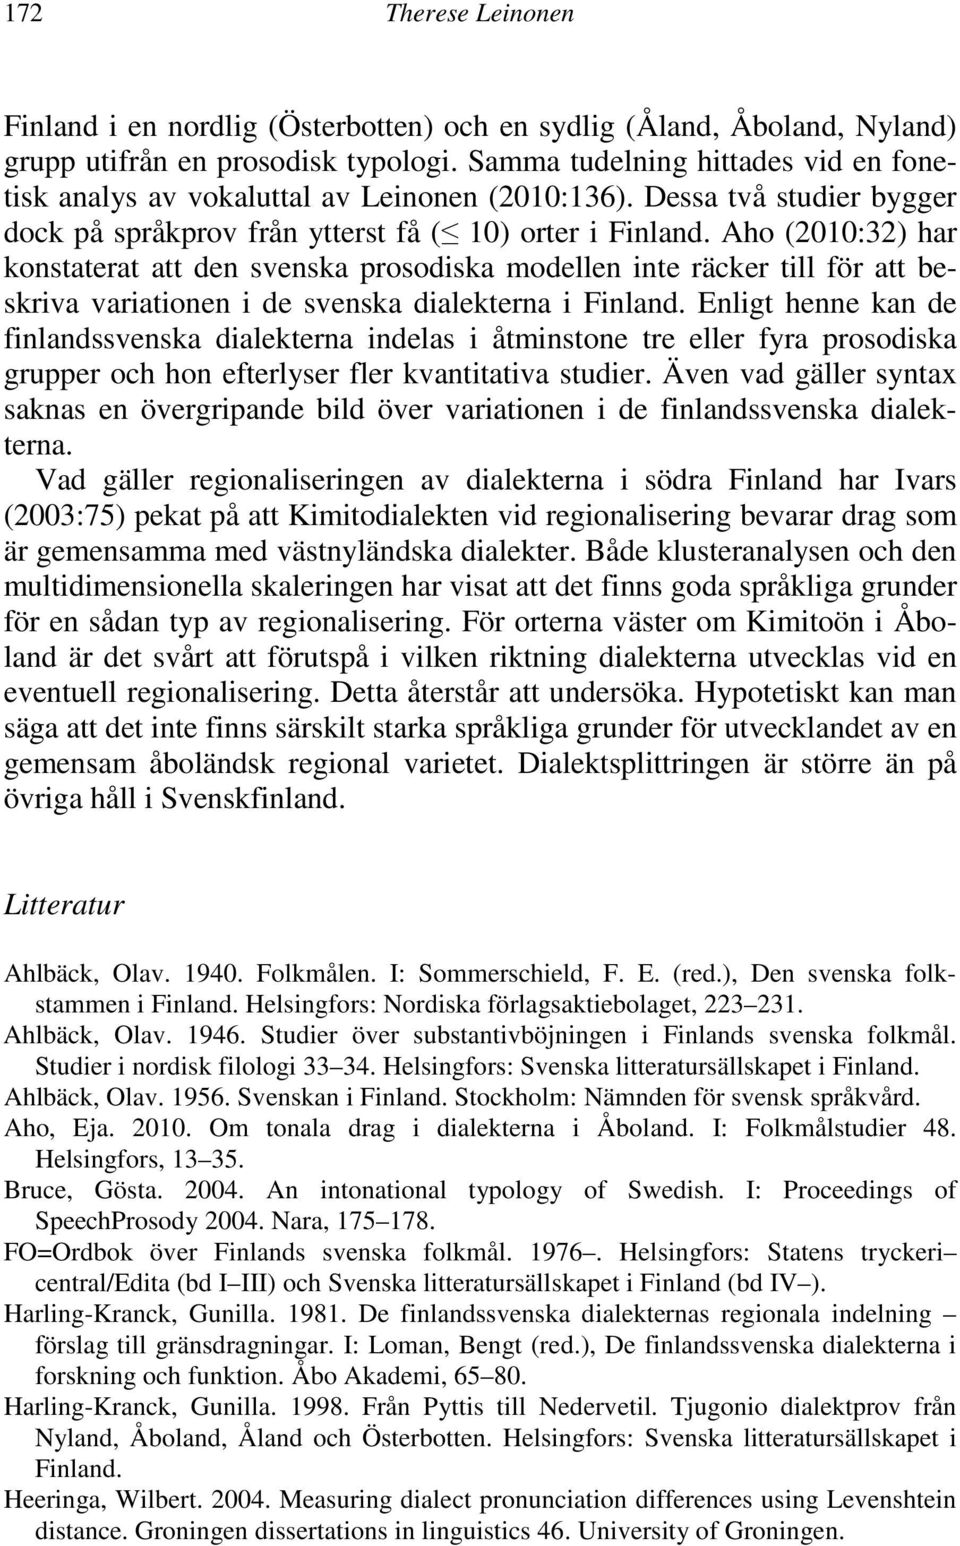 Aho (2010:32) har konstaterat att den svenska prosodiska modellen inte räcker till för att beskriva variationen i de svenska dialekterna i Finland.